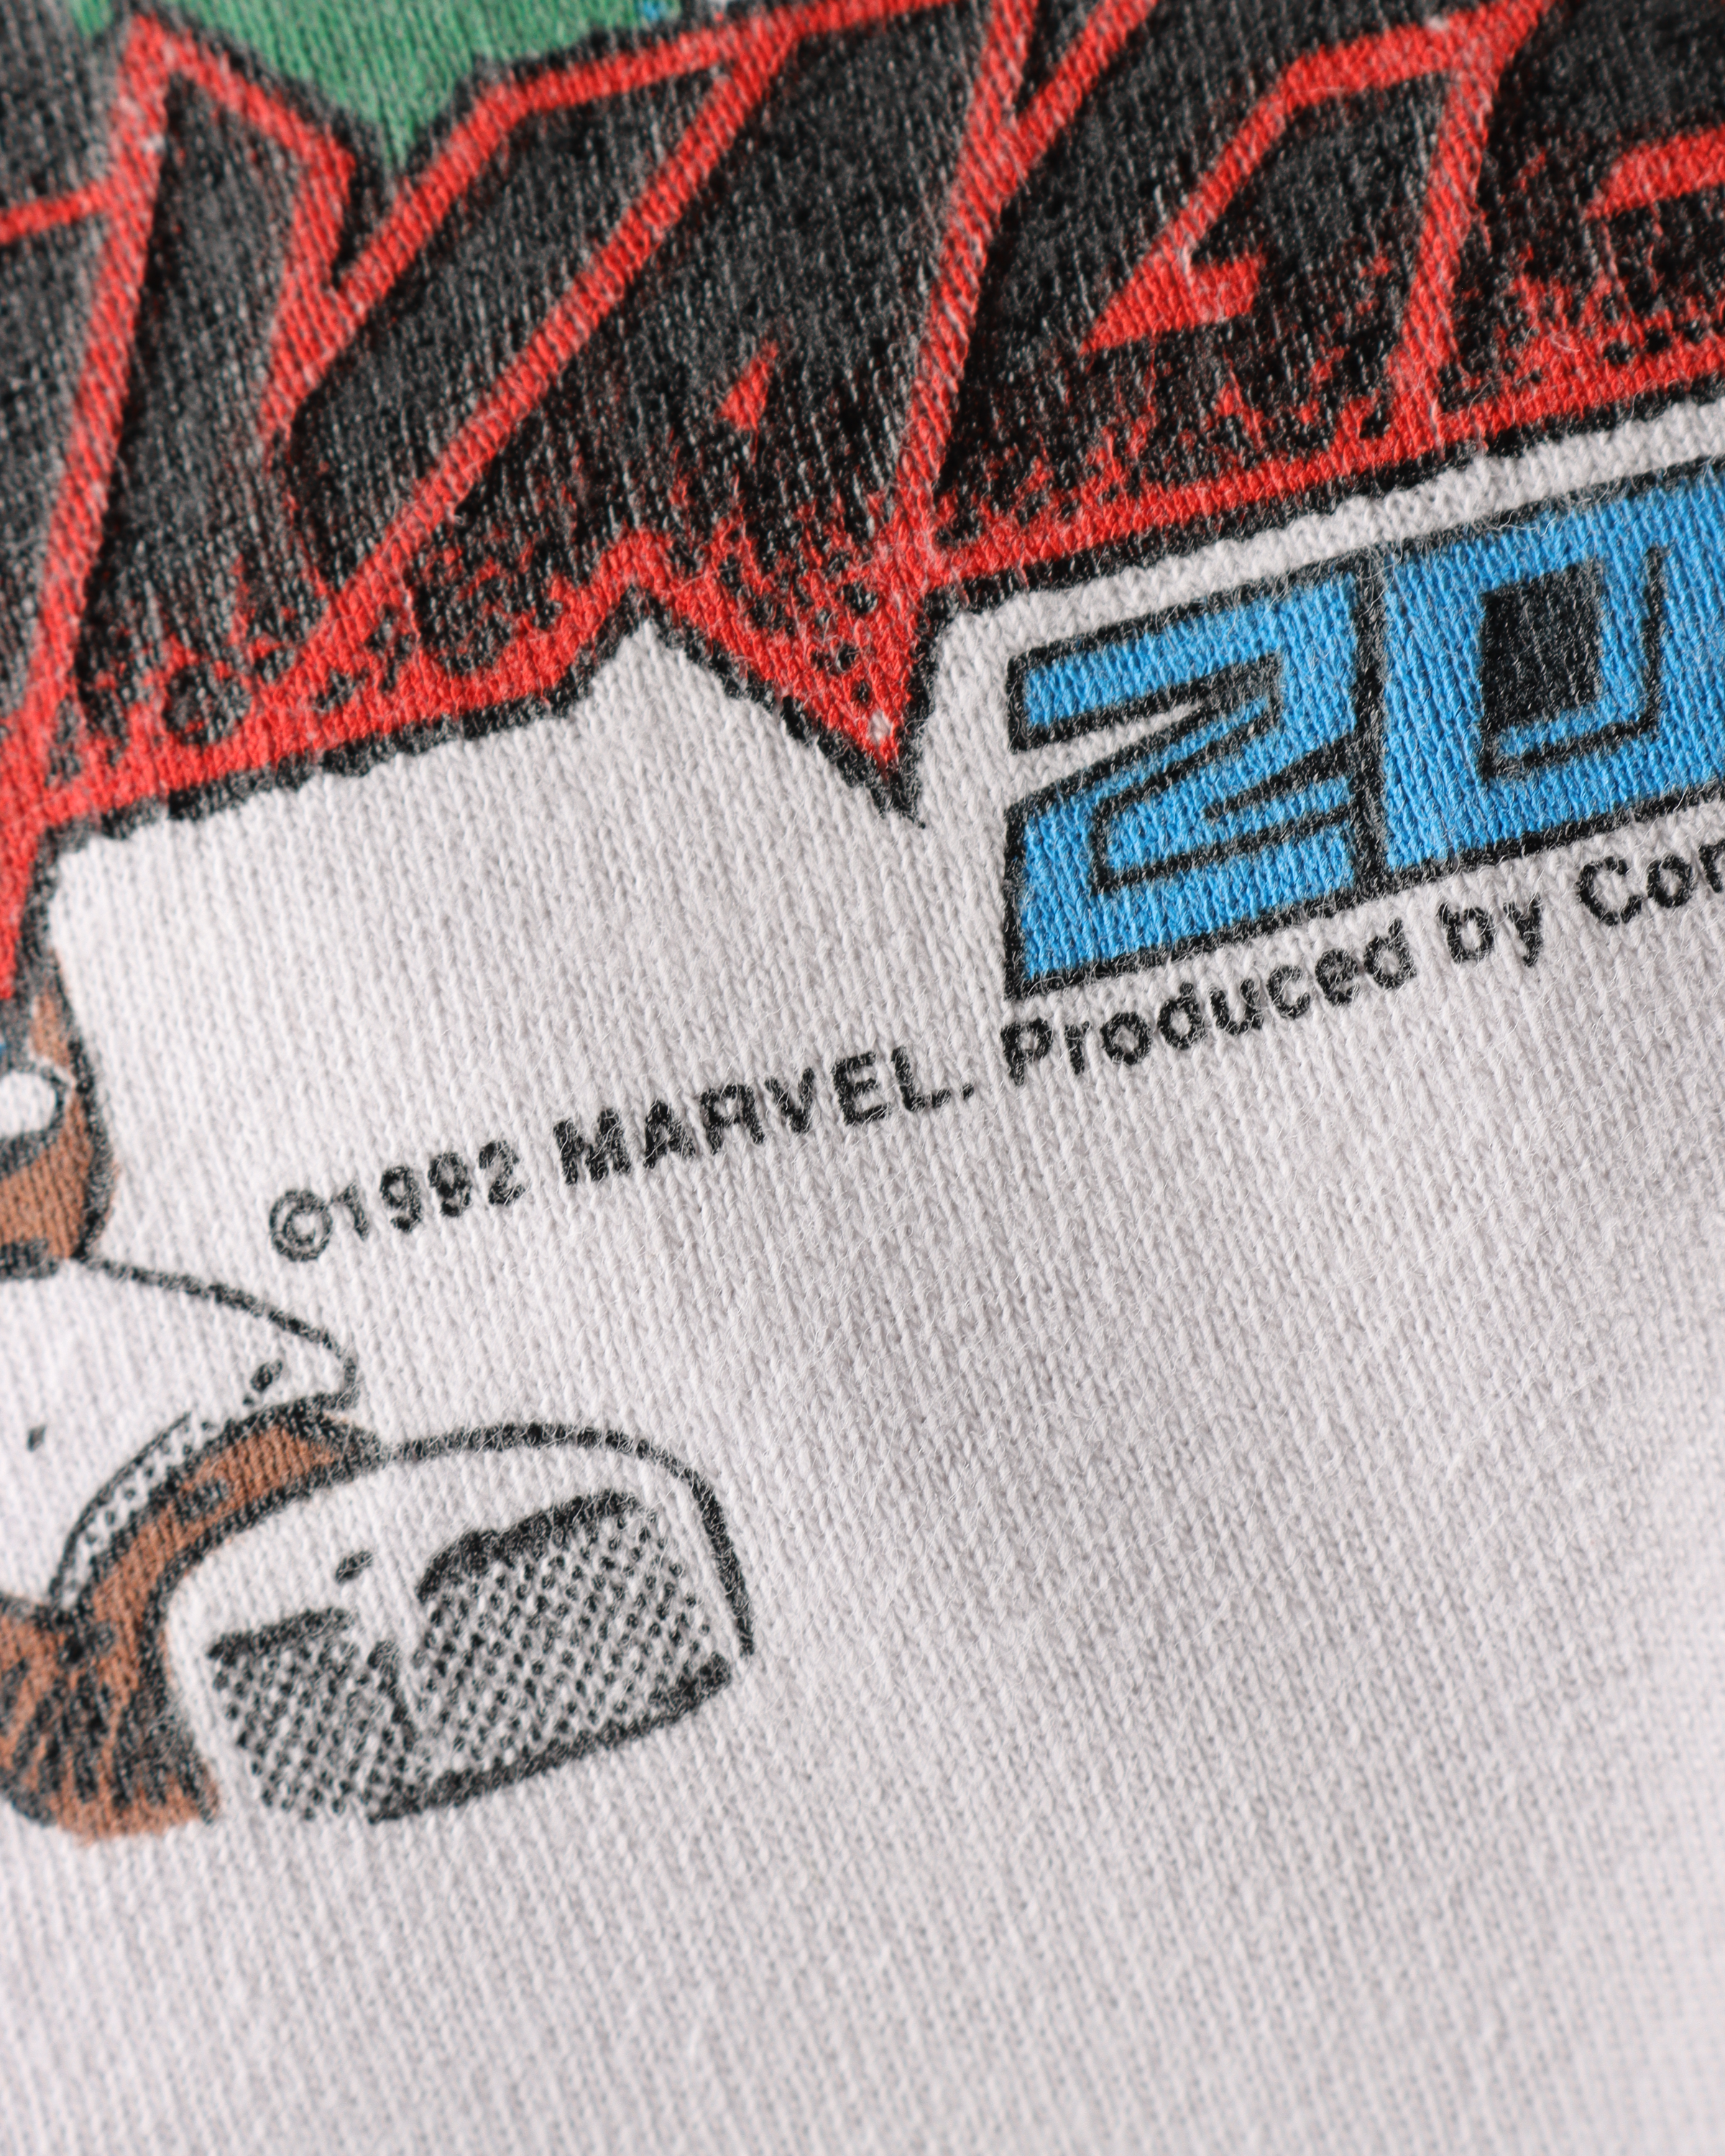 Marvel Ravage 2099 T-Shirt